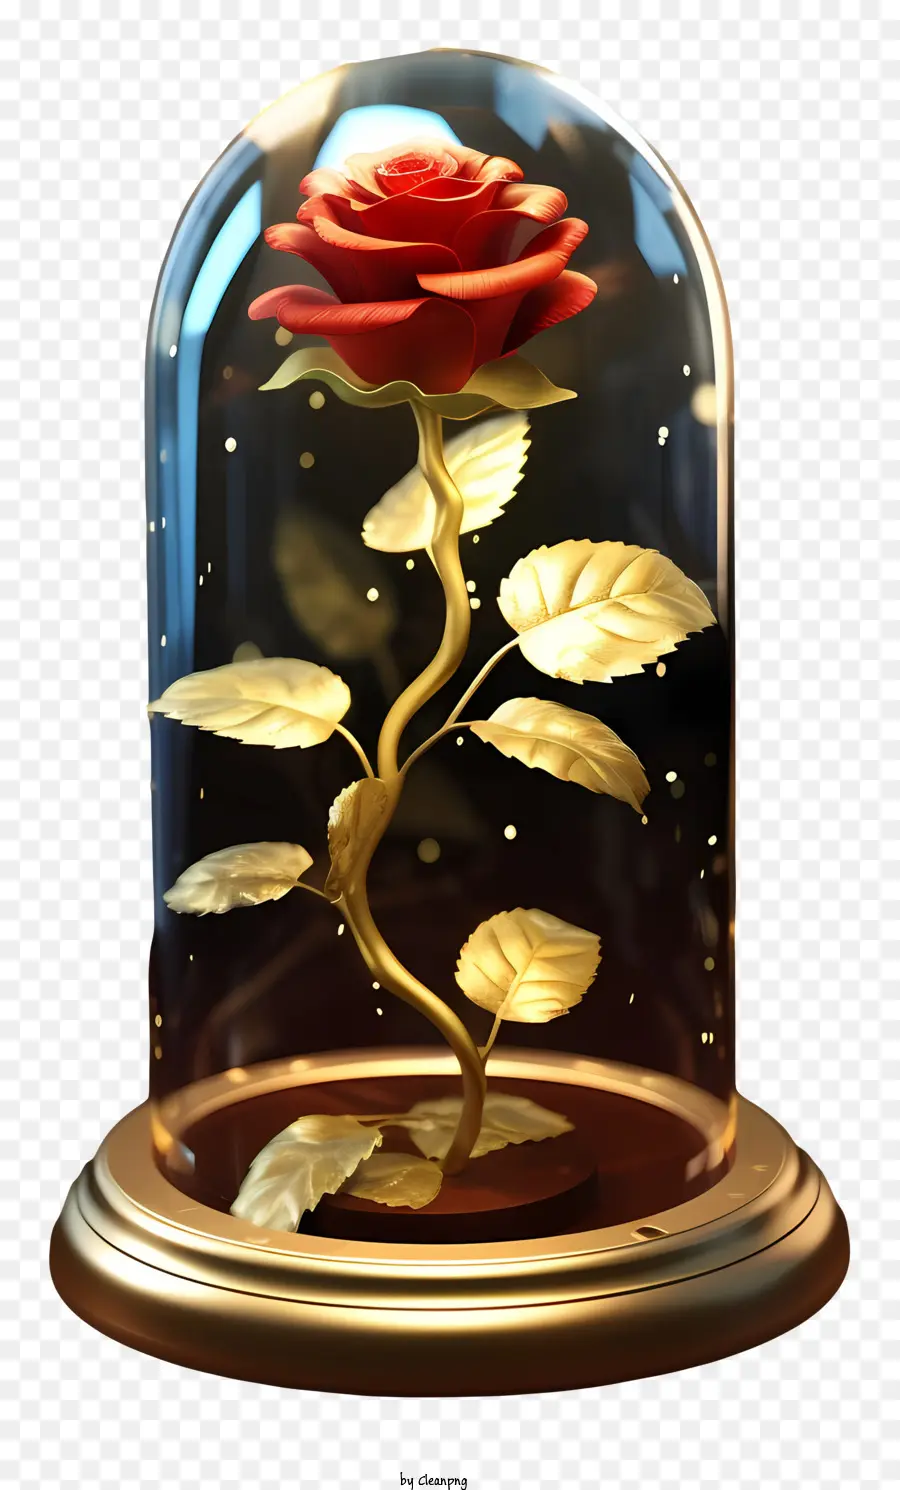 bông hồng đỏ - Hoa hồng đỏ trong vòm thủy tinh với ánh sáng vàng